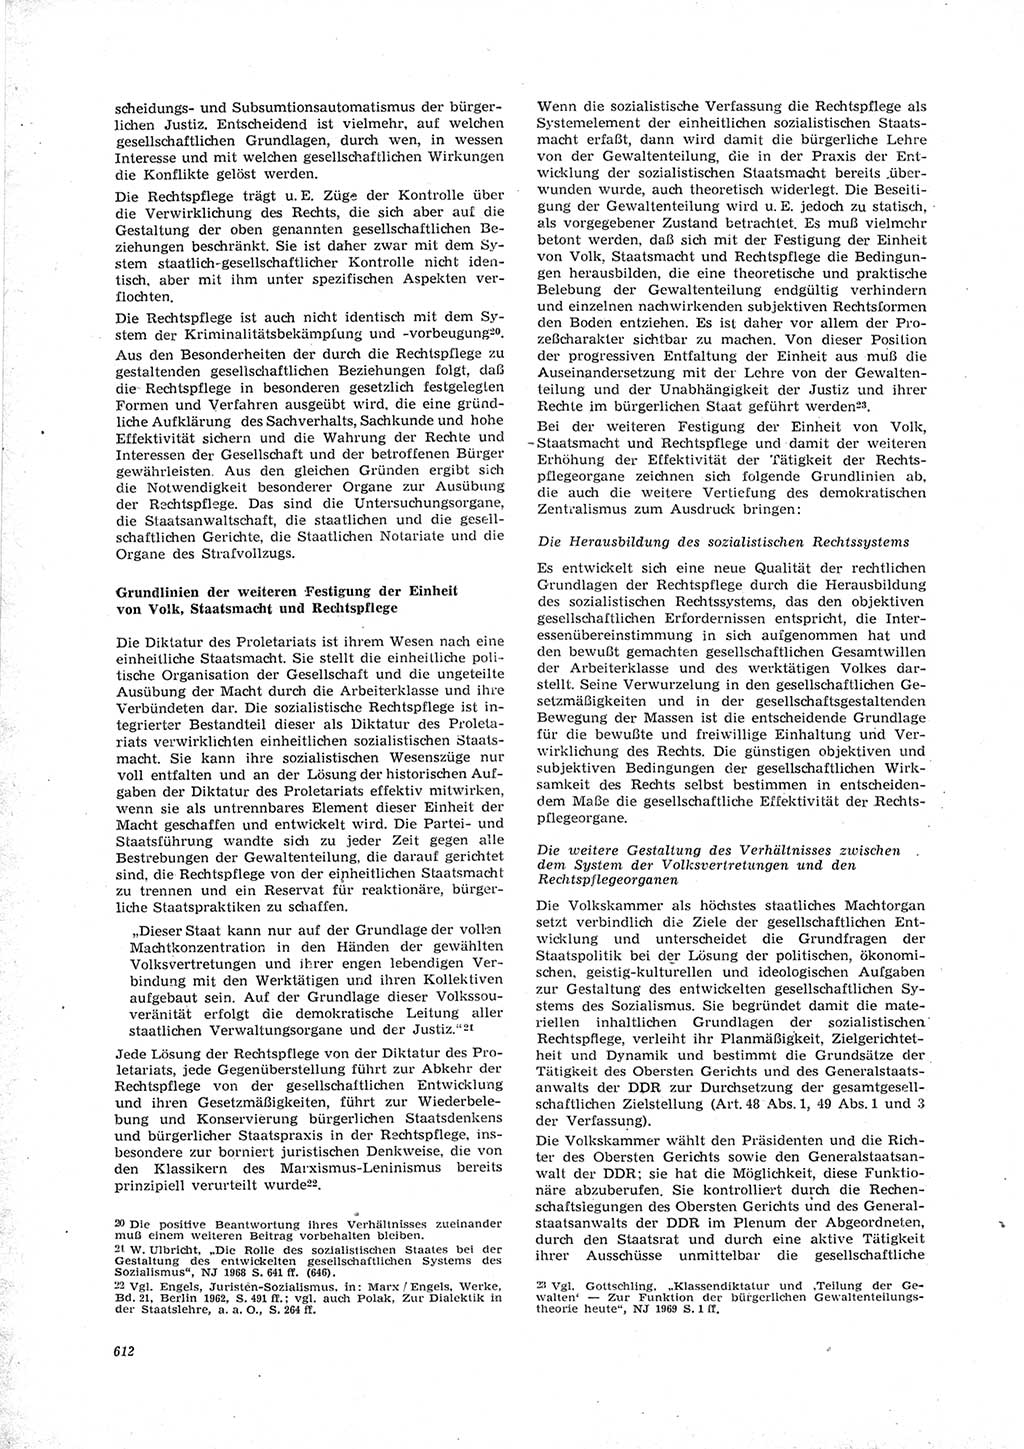 Neue Justiz (NJ), Zeitschrift für Recht und Rechtswissenschaft [Deutsche Demokratische Republik (DDR)], 23. Jahrgang 1969, Seite 612 (NJ DDR 1969, S. 612)